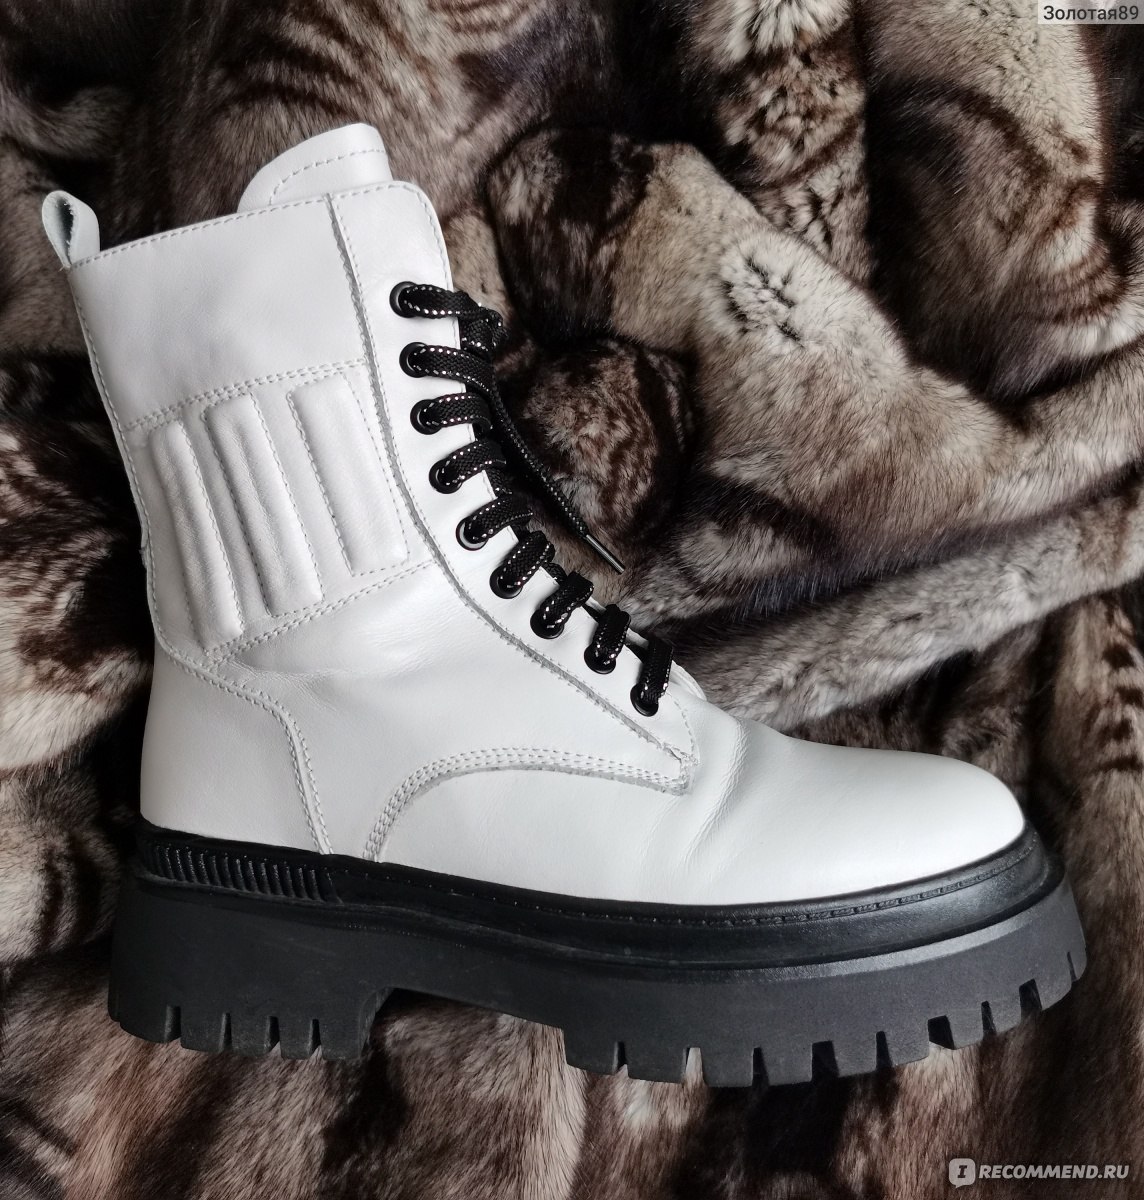 Зимние ботинки Arzoli Арт. VA510-565 - «Белые грубые ботинки